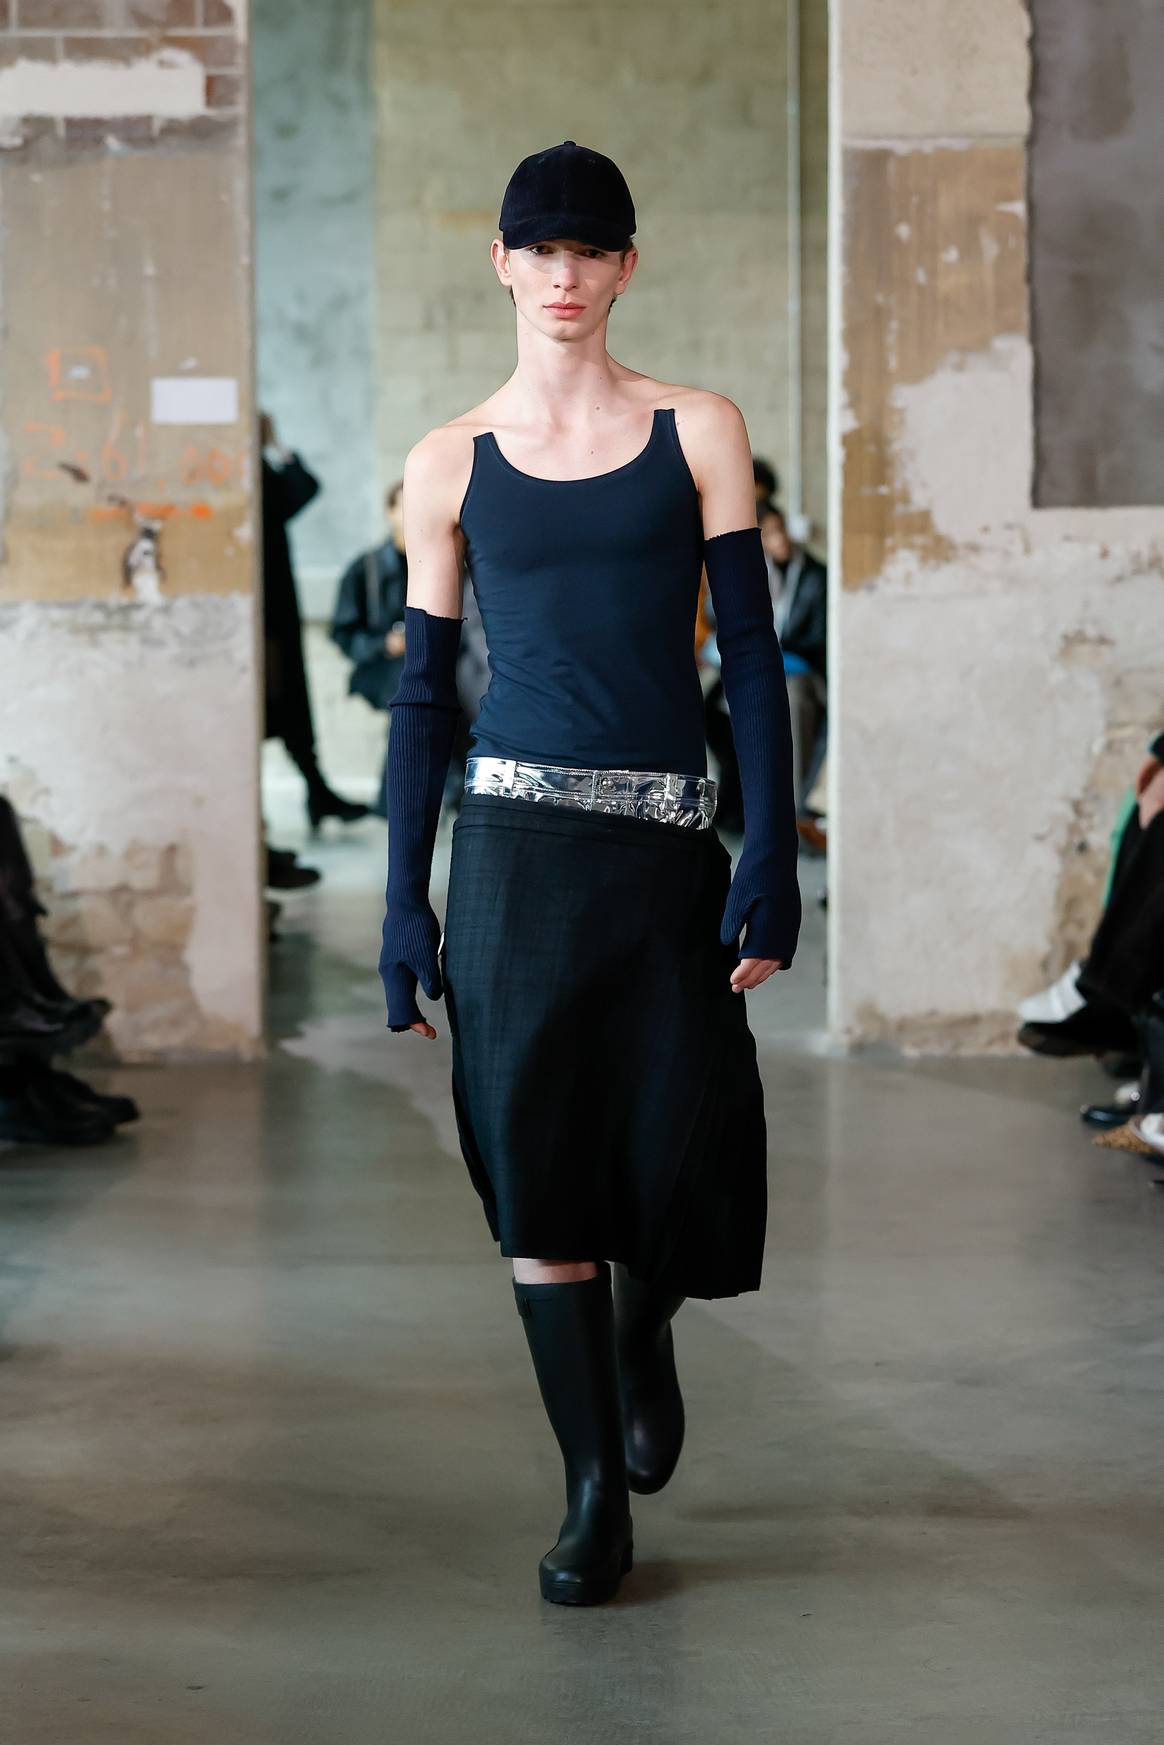 Duran Lantink presented during Paris Fashion Week, March 2023.
designing upcycled Hema shirts.